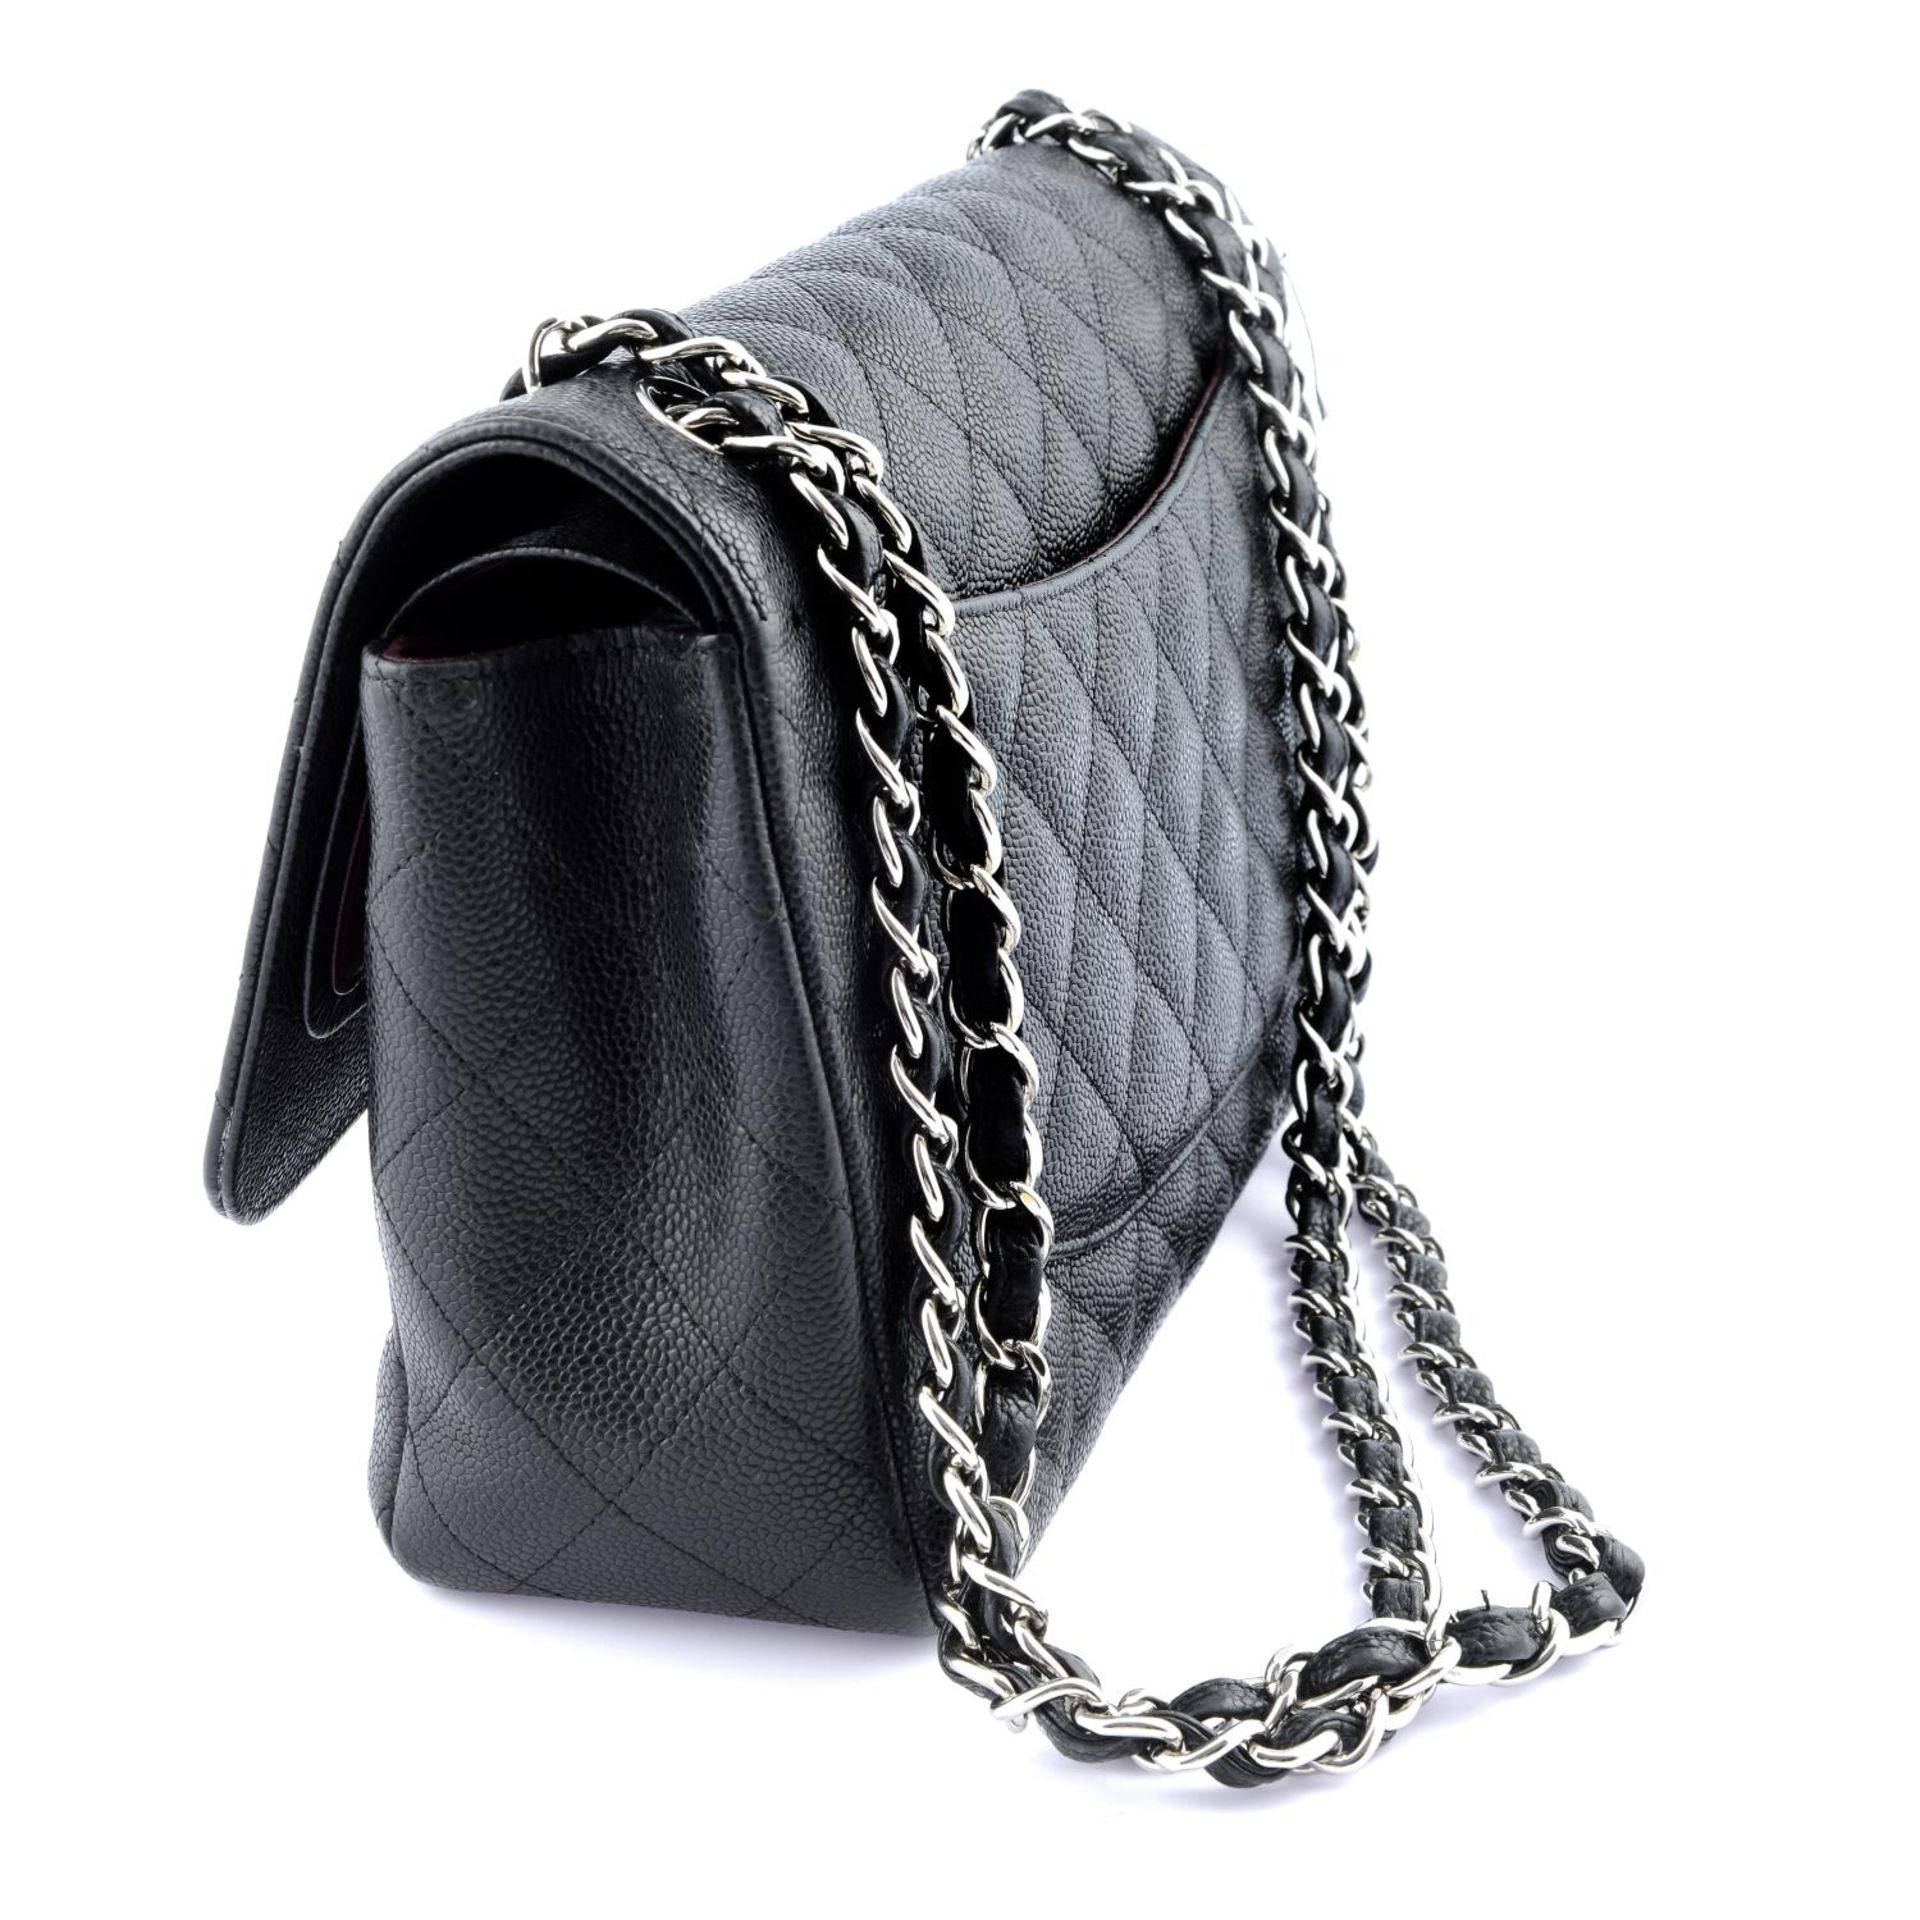 CHANEL - a Jumbo Double Flap handbag. - Image 3 of 4